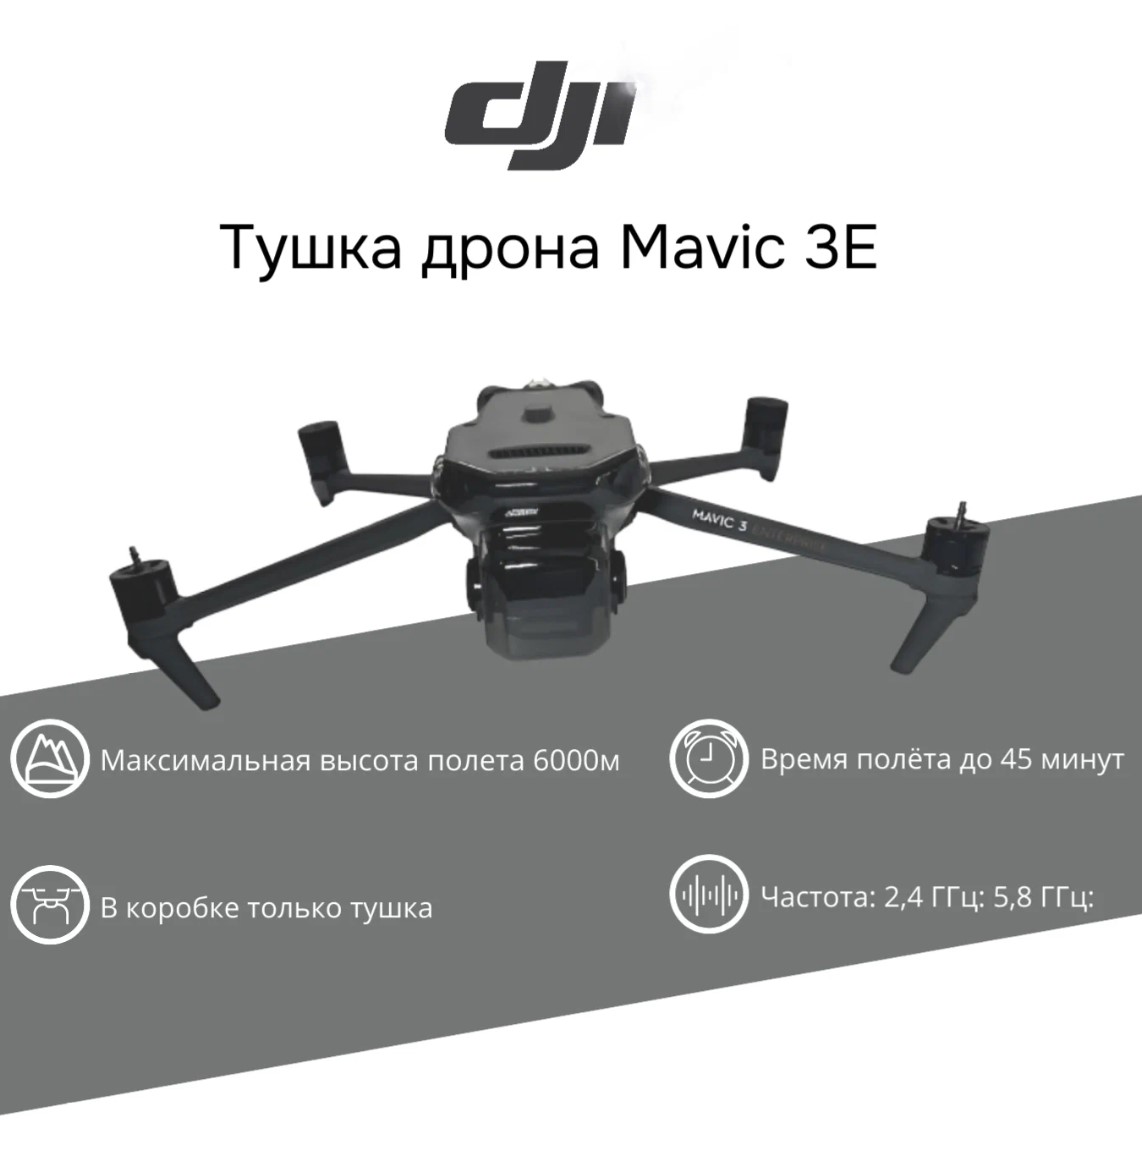 Квадрокоптер DJI Silver, купить в Москве, цены в интернет-магазинах на Мегамаркет